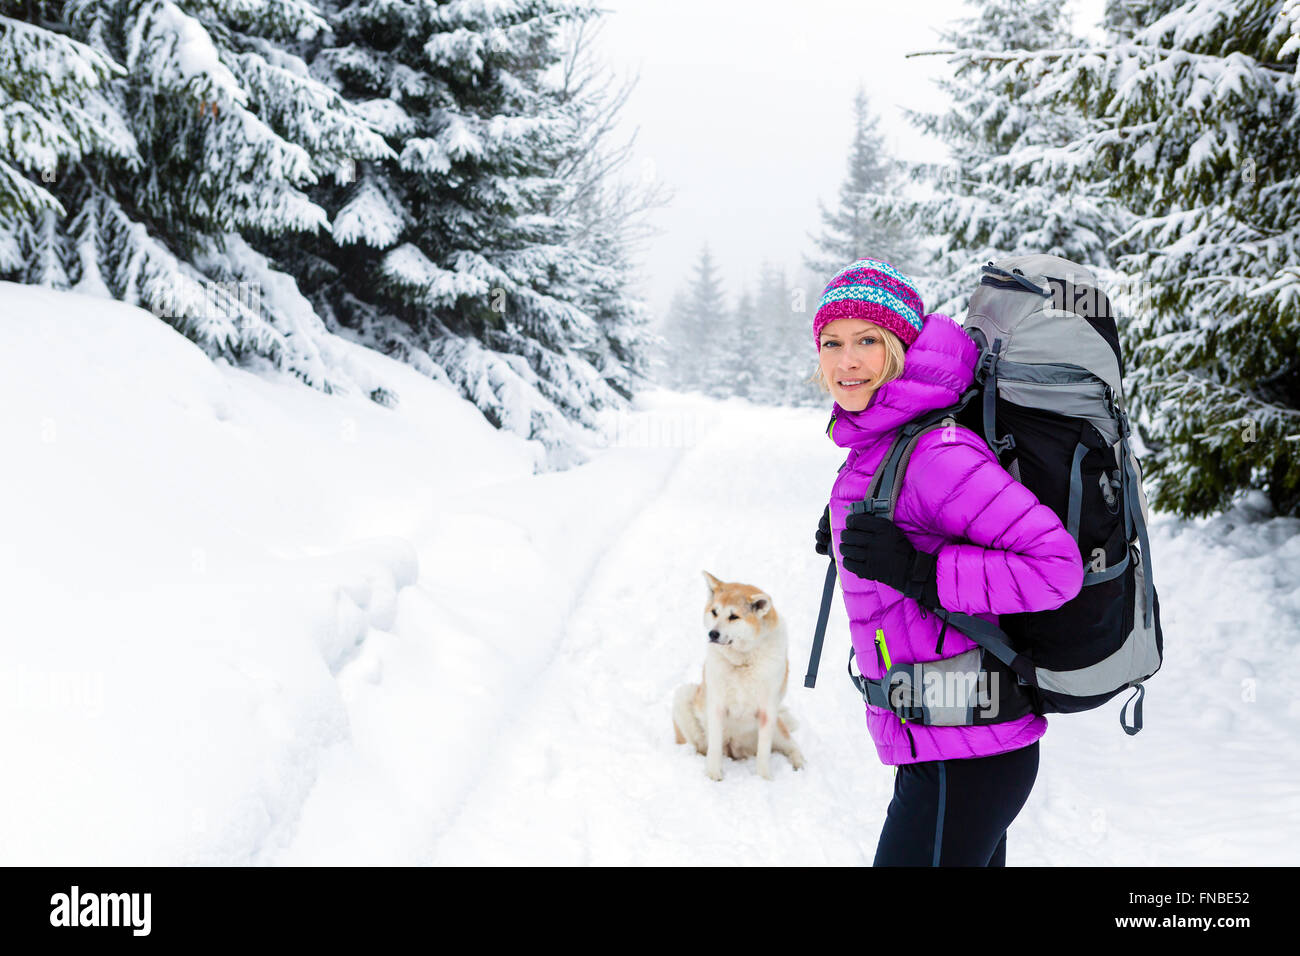 Wandern, trekking im Winterwald mit Akita Hund Frau. Erholung, Fitness und einen gesunden Lebensstil im Freien in der schönen Schnee Natur Stockfoto